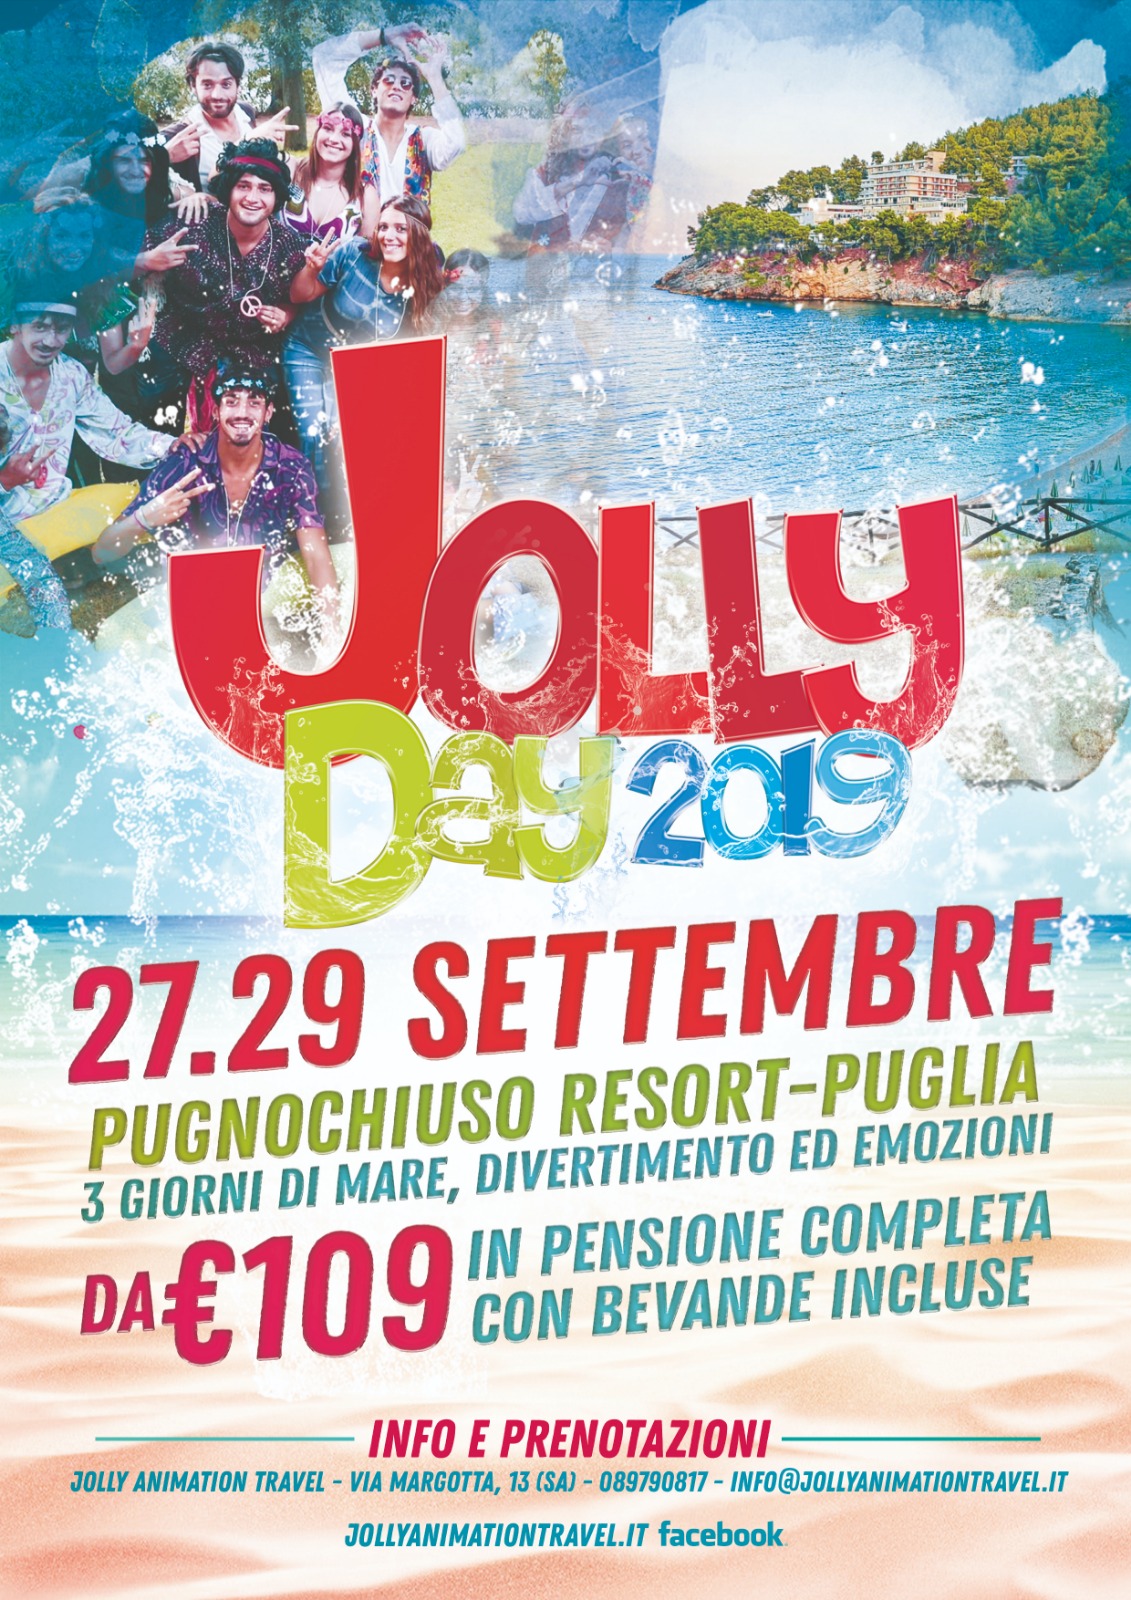 Jolly Day 2019 pugnochiuso